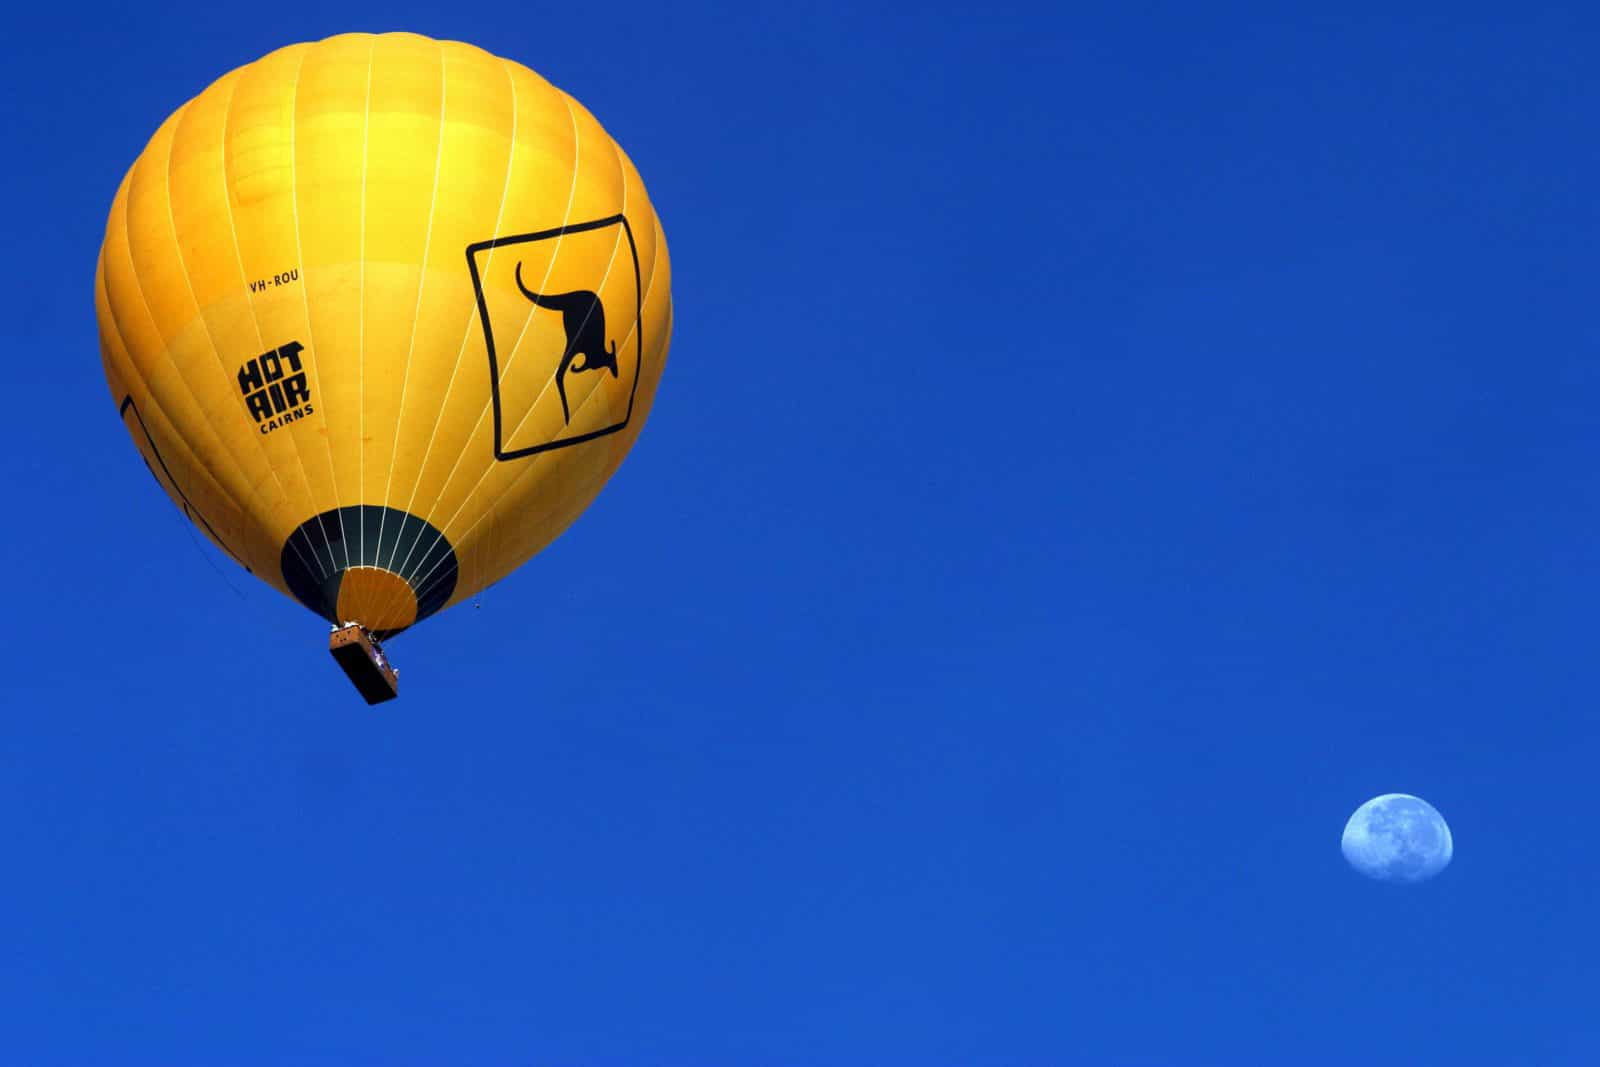 Brisbane hot air balloon rides